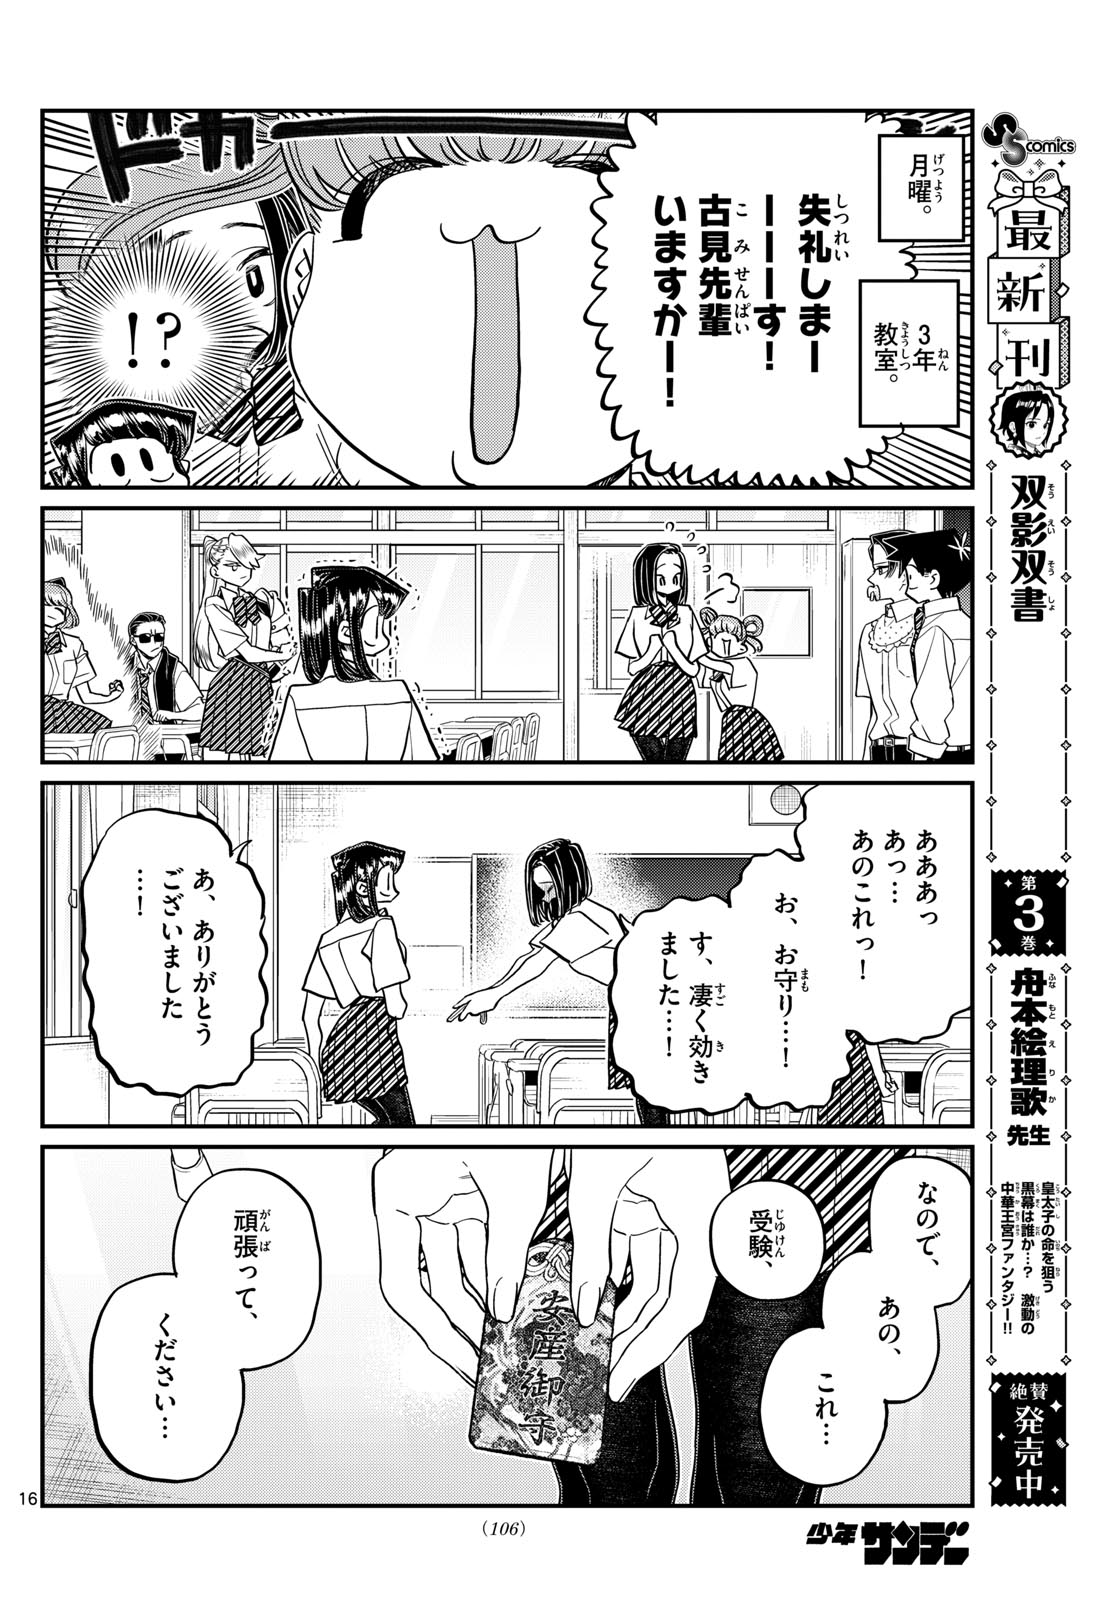 Komi-san wa Komyushou Desu - Chapter 436 - Page 16